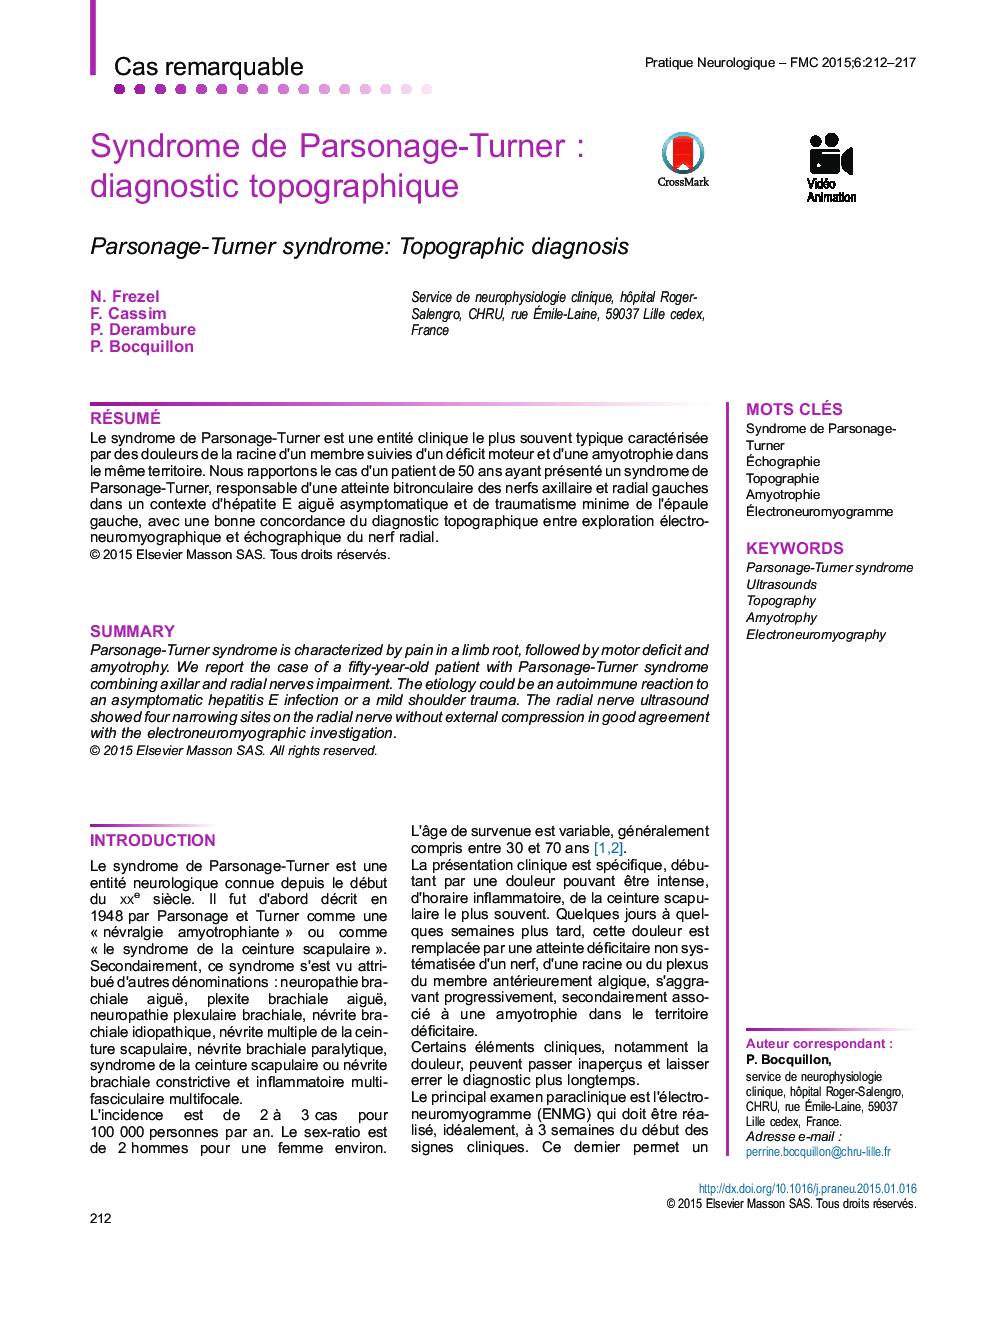 Syndrome de Parsonage-TurnerÂ : diagnostic topographique